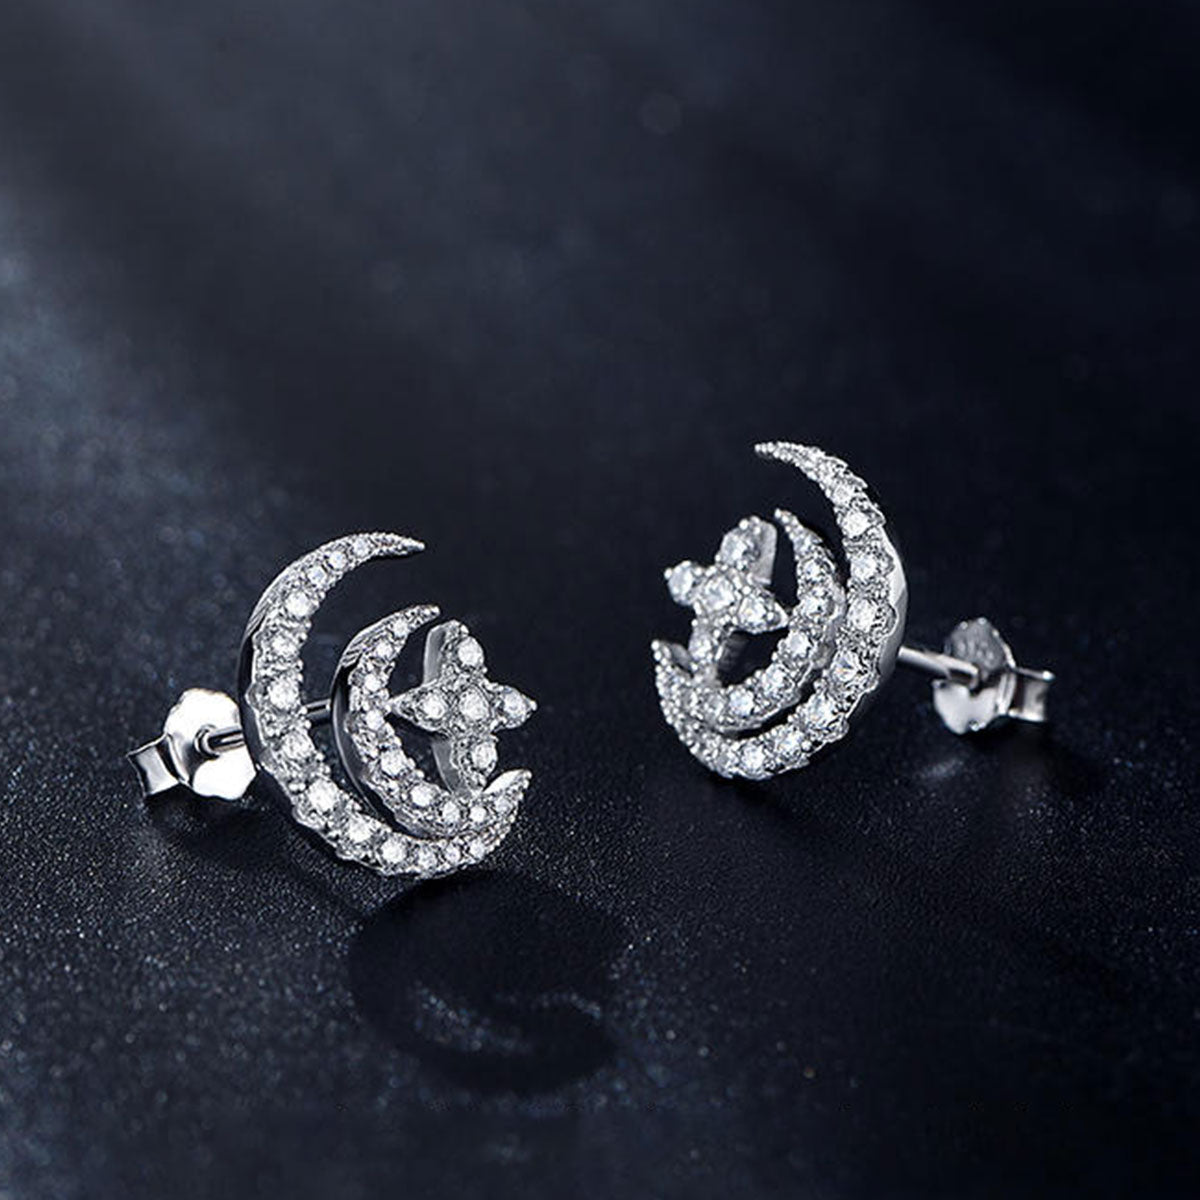 White Gold Star & Moon Full Stones Stud Earrings